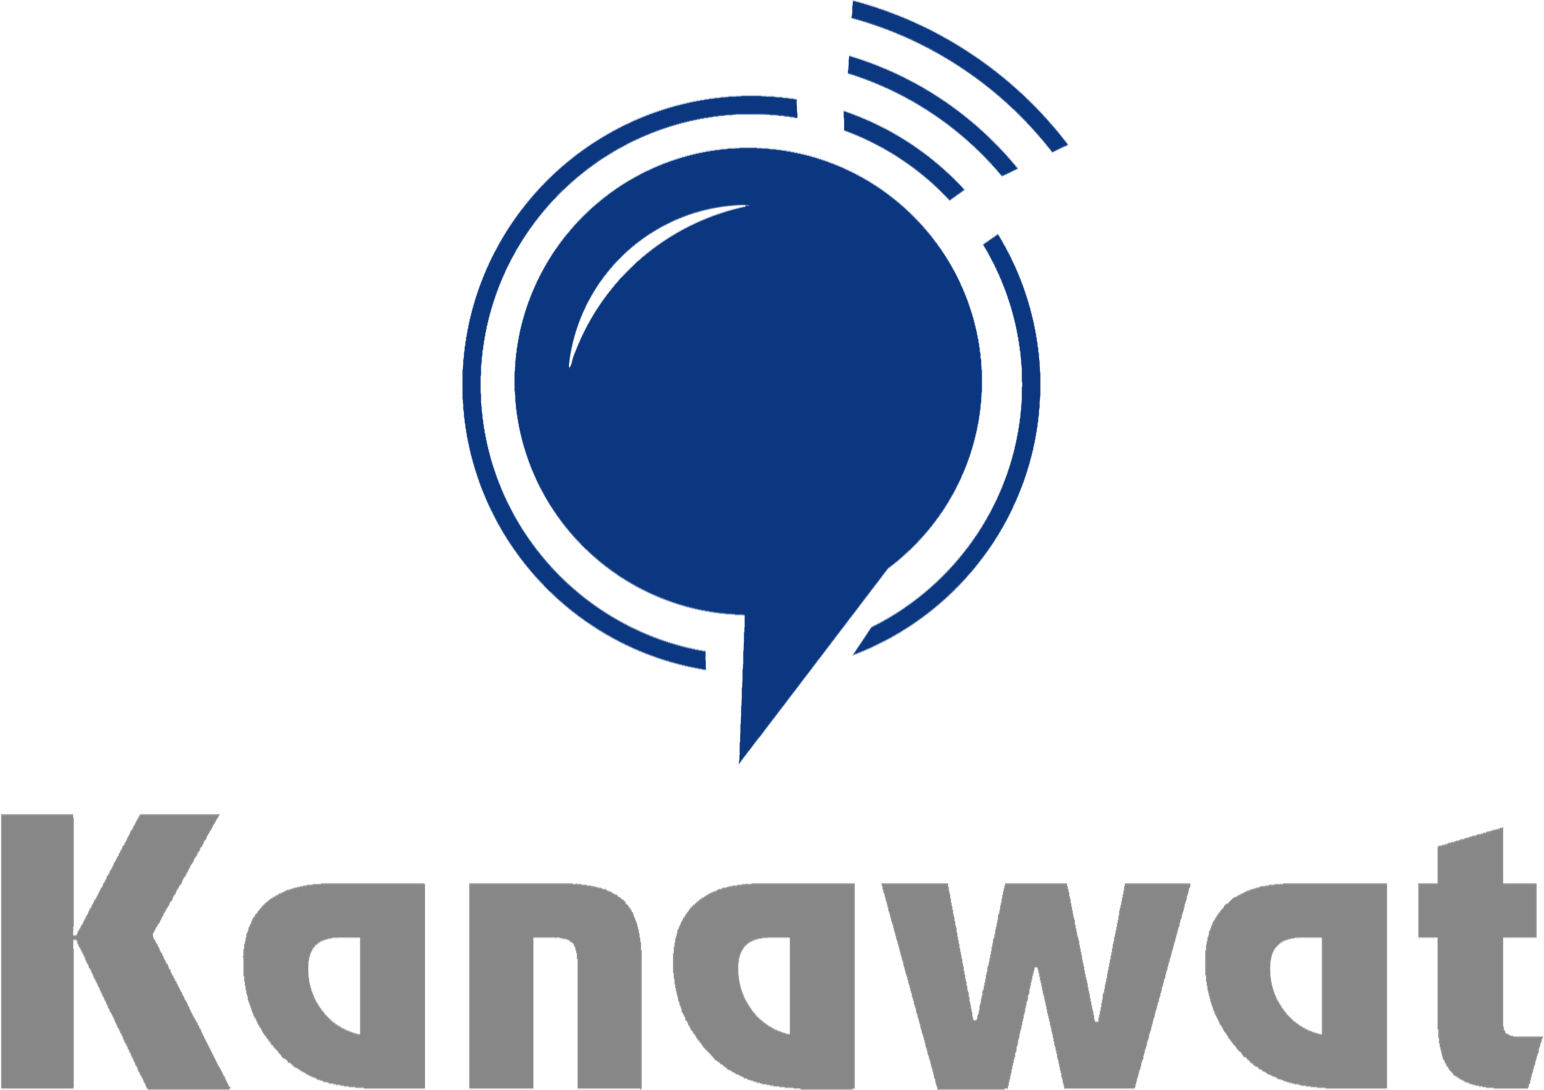 Kanawat Logo